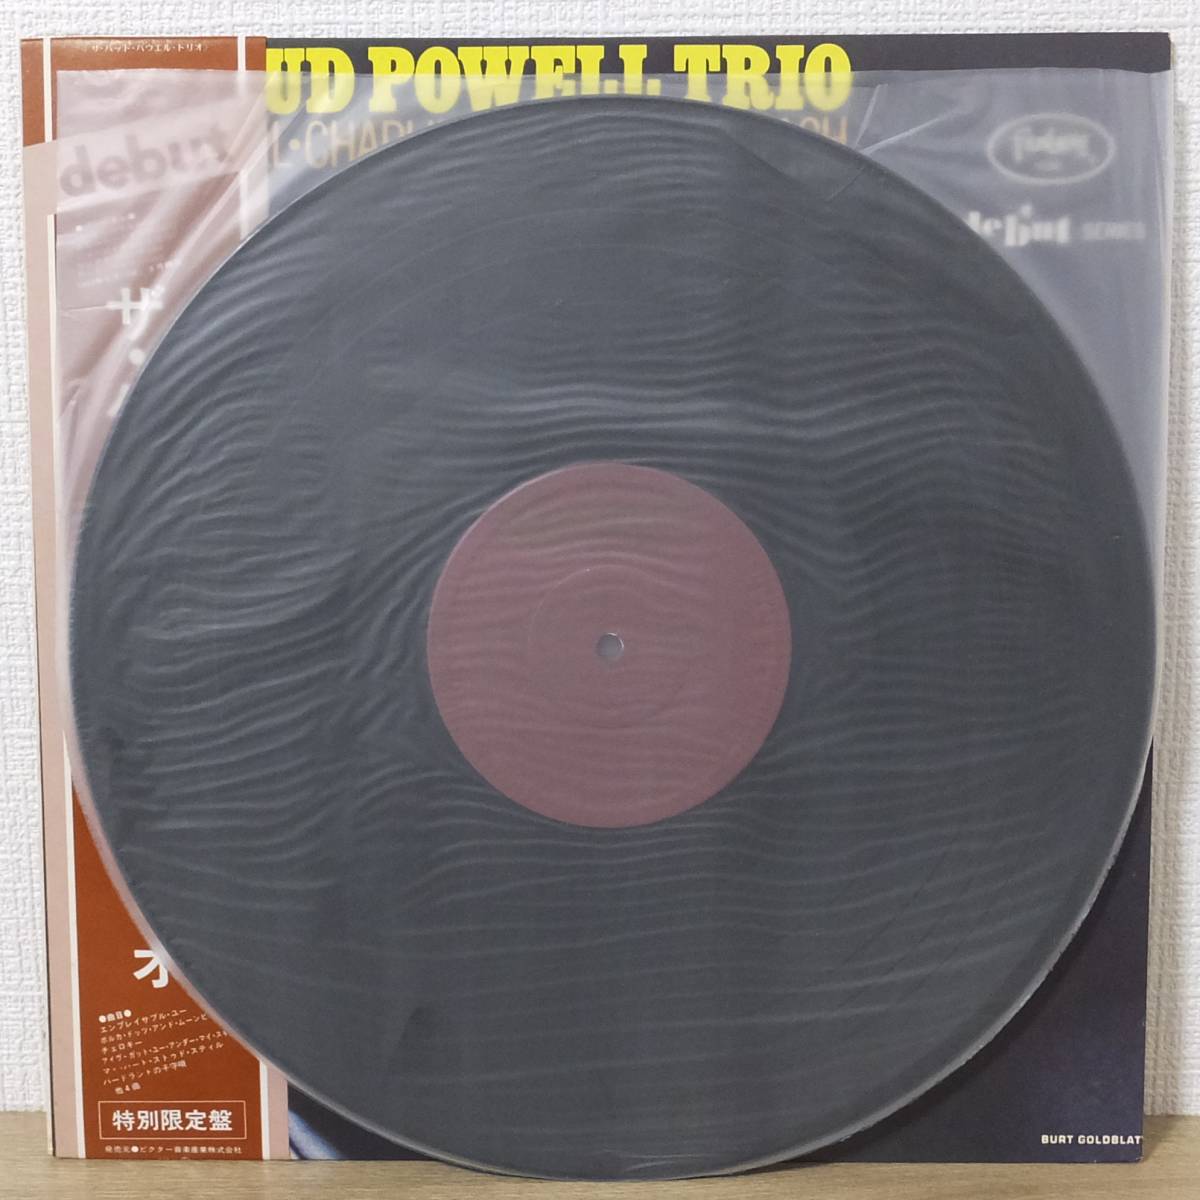 帯付 LPレコード THE BUD POWELL TRIO ザ・バッド・パウエル・トリオ バド・パウエル 特別限定盤 VIJ-5002M debut_画像4